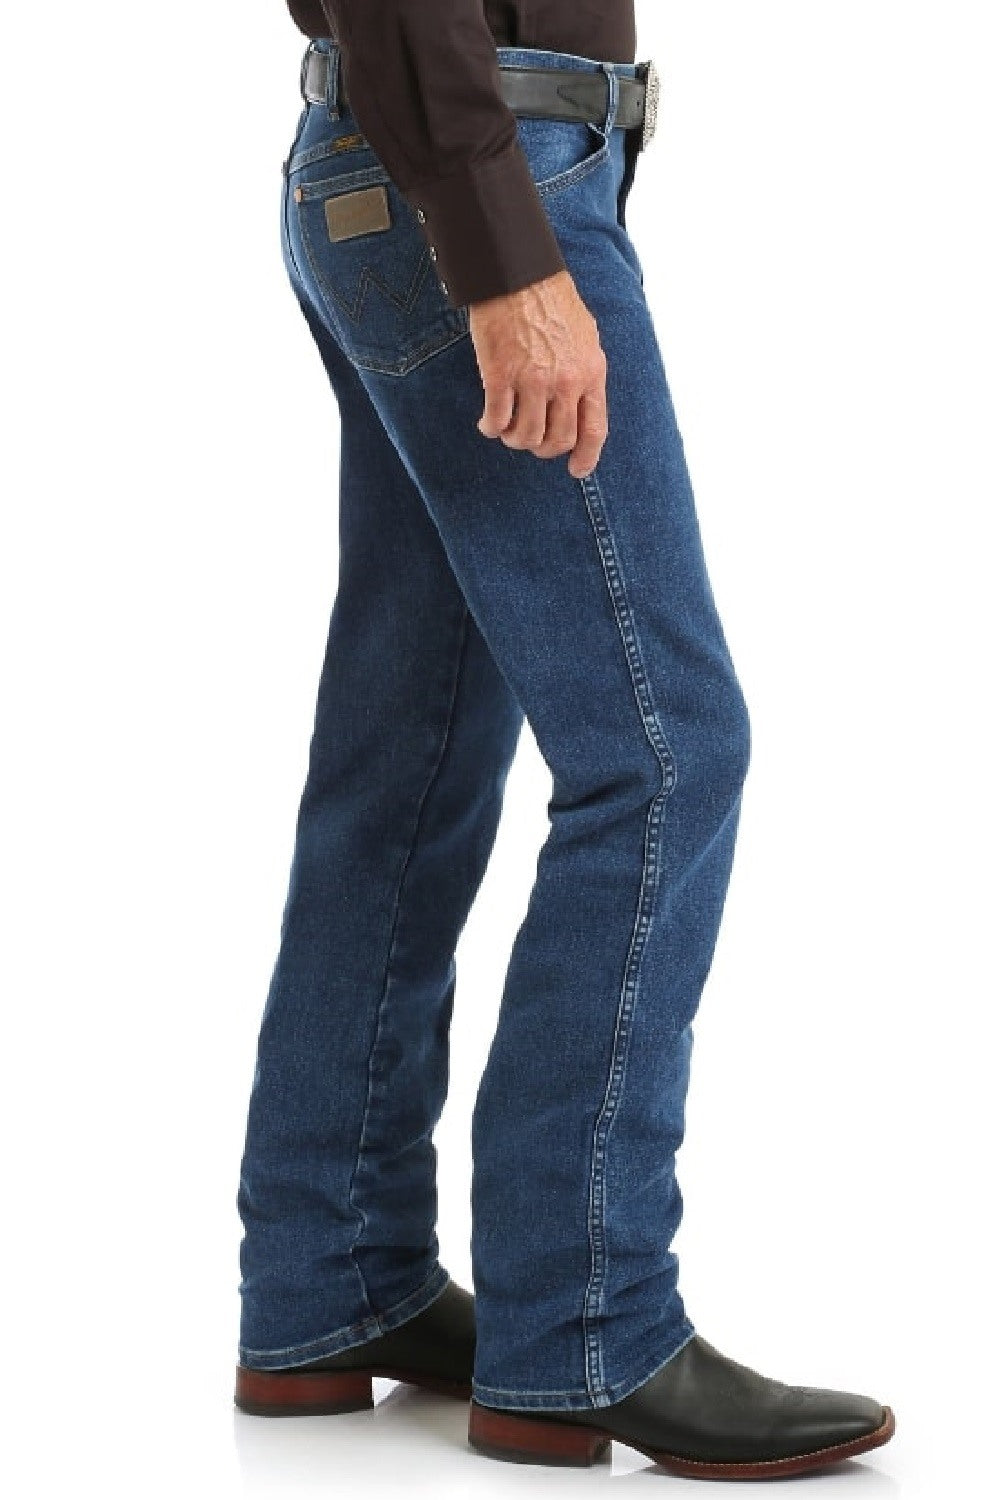 Wrangler Men's Original Fit Cowboy Cut Active Flex Jean